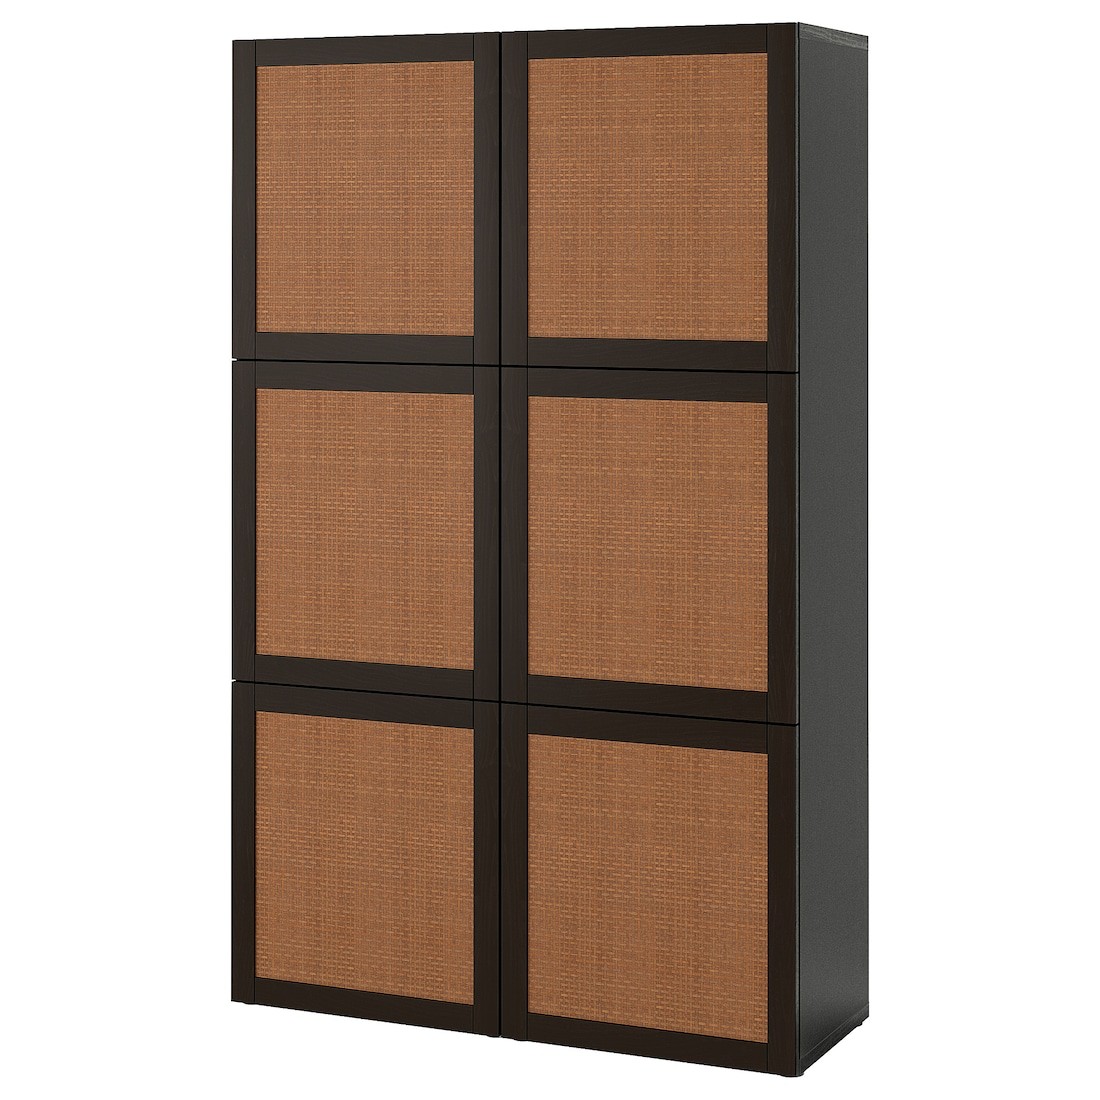 BESTÅ БЕСТО Комбінація для зберігання з дверцятами, чорно-коричневий Studsviken / темно-коричнева плетена тополя, 120x42x193 см